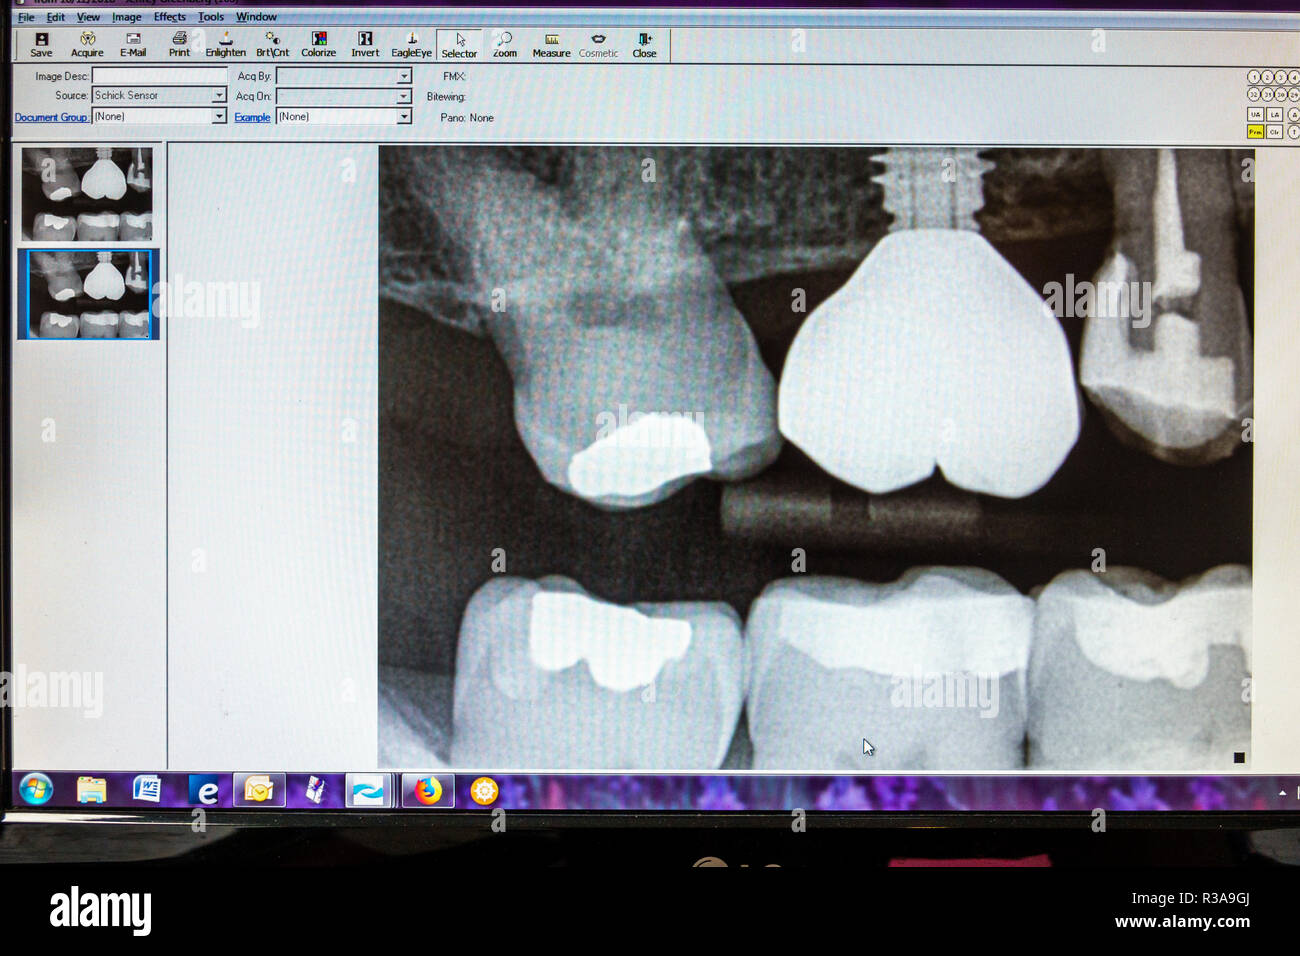 Miami Beach Florida, Zahnarztpraxis, Röntgenstrahlen Röntgenstrahlen, Zahnzähne, Implantat Wurzelkanal Schraube Krone Füllung, FL181030027 Stockfoto